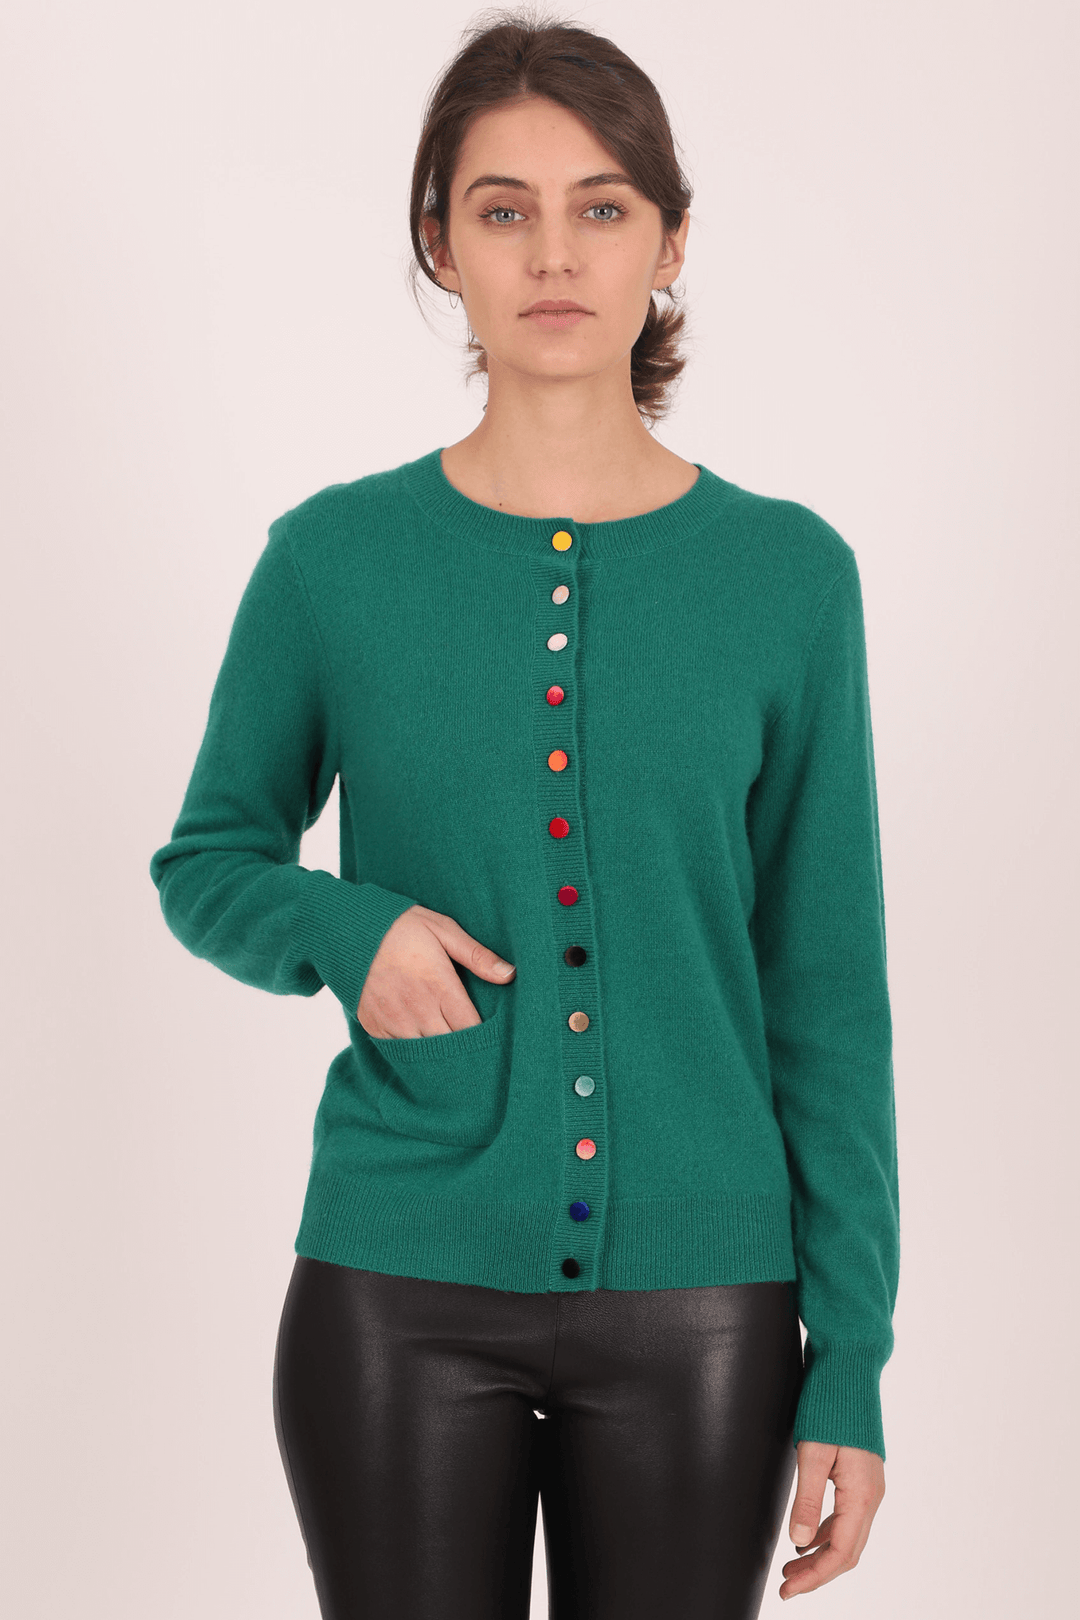 Estheme Cashmere WES2114H Green Multicolour Button Cashmere Cardigan - Shirley Allum Boutique